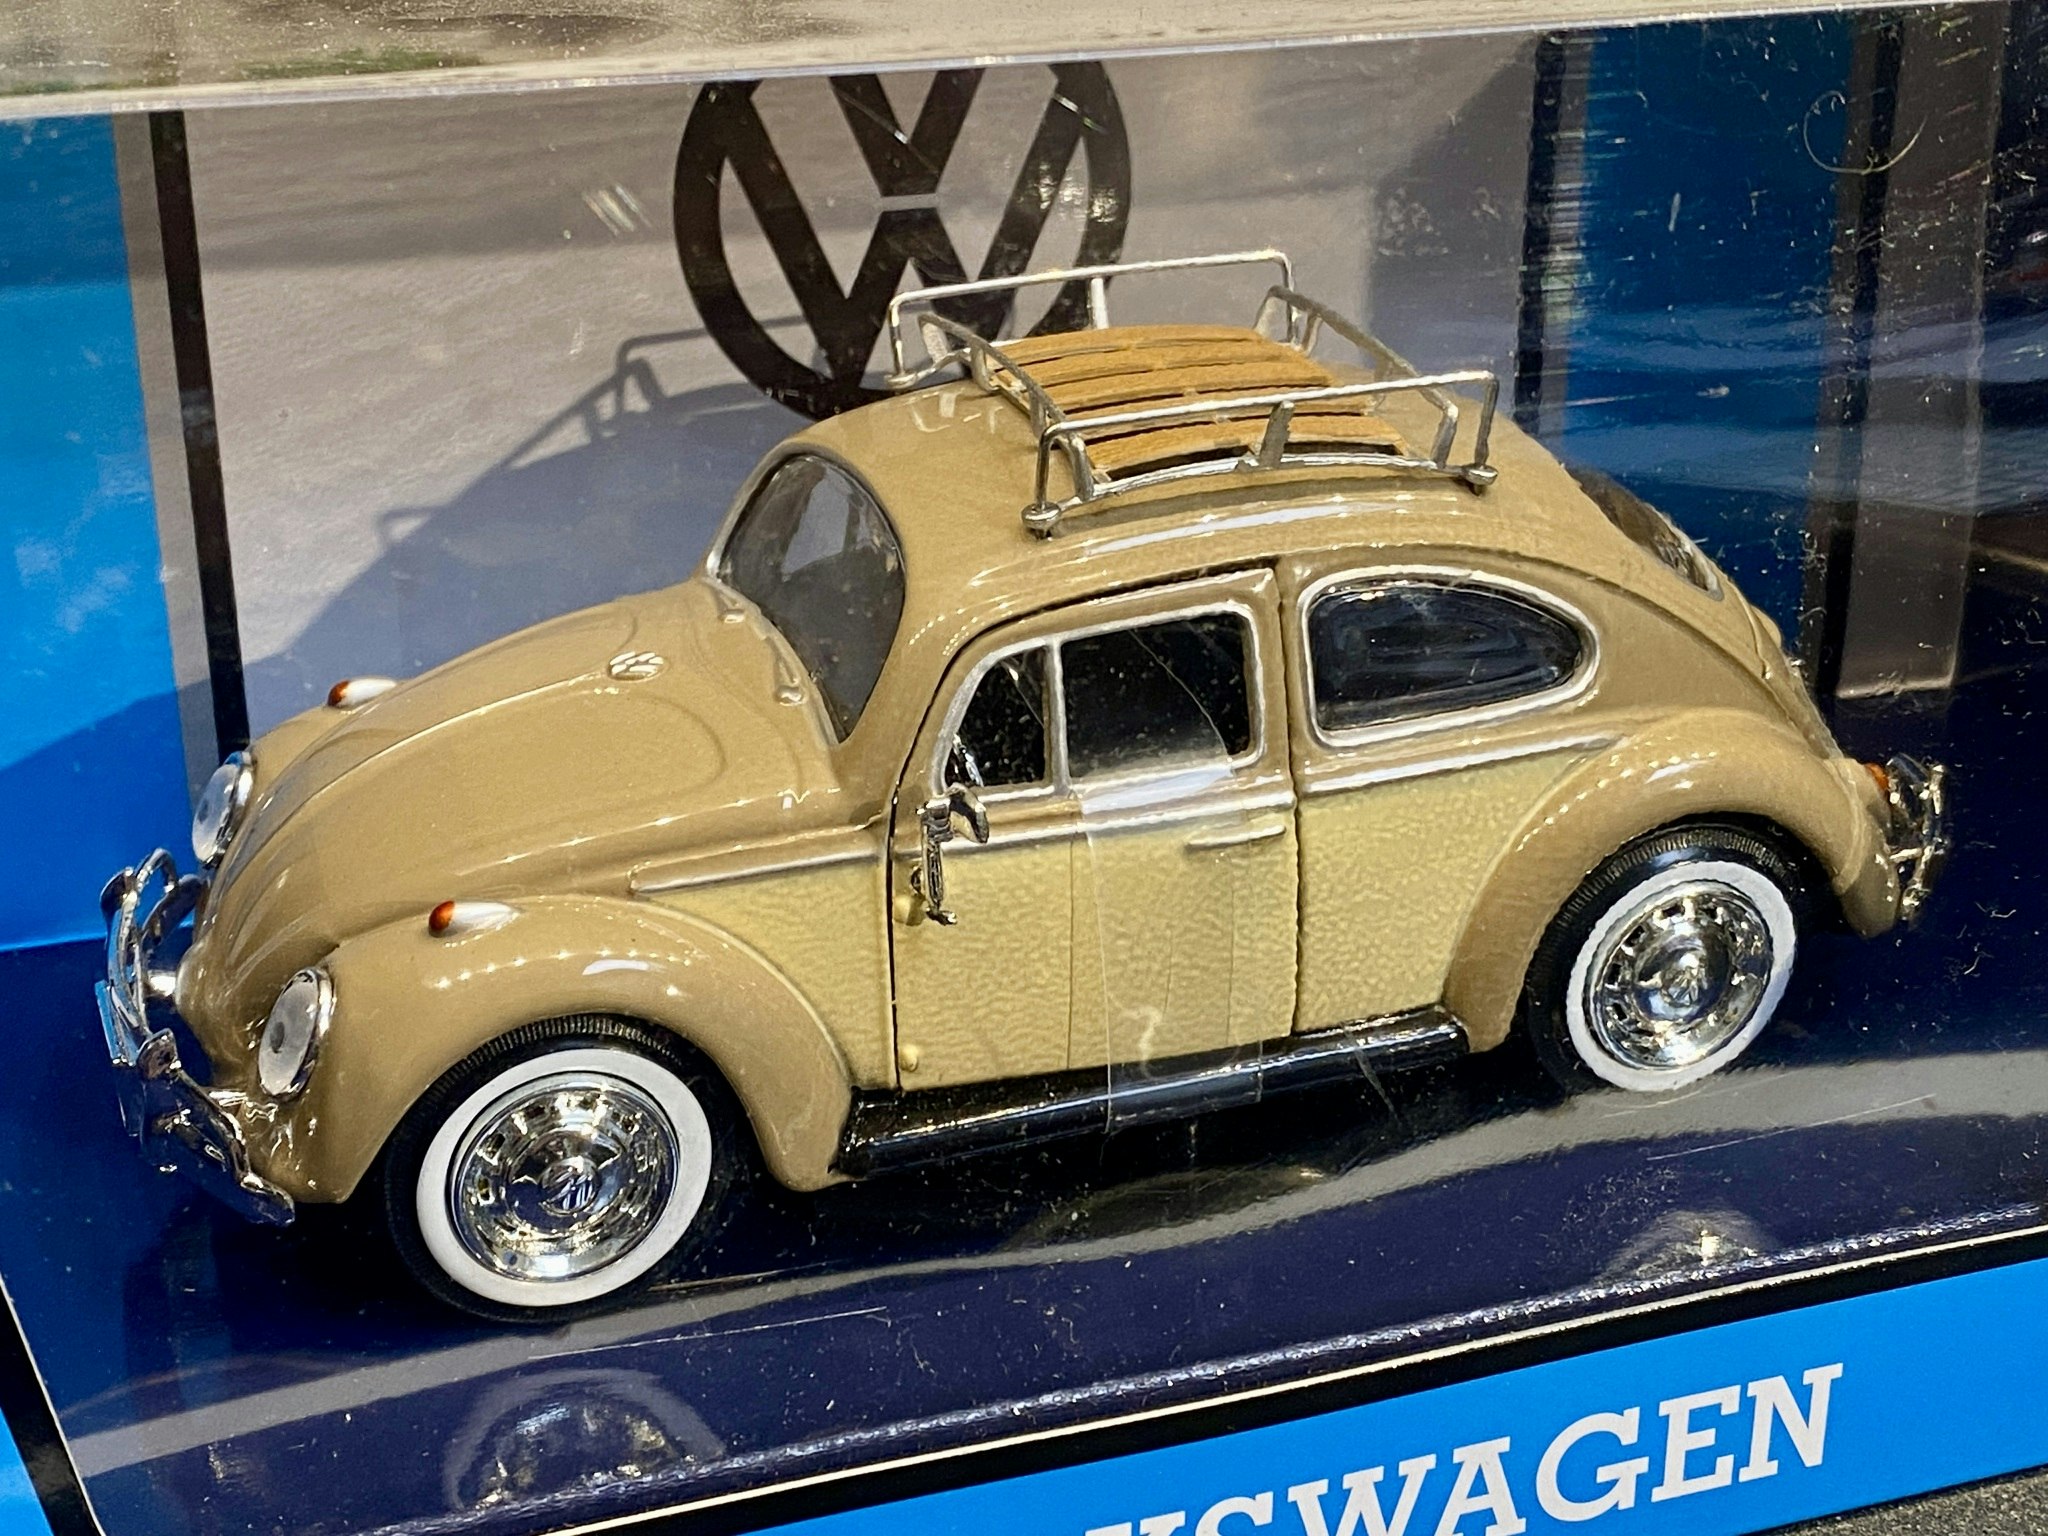 Skala 1/24 Volkswagen Beetle 66' w Roof Luggage Rack. fr Motormax